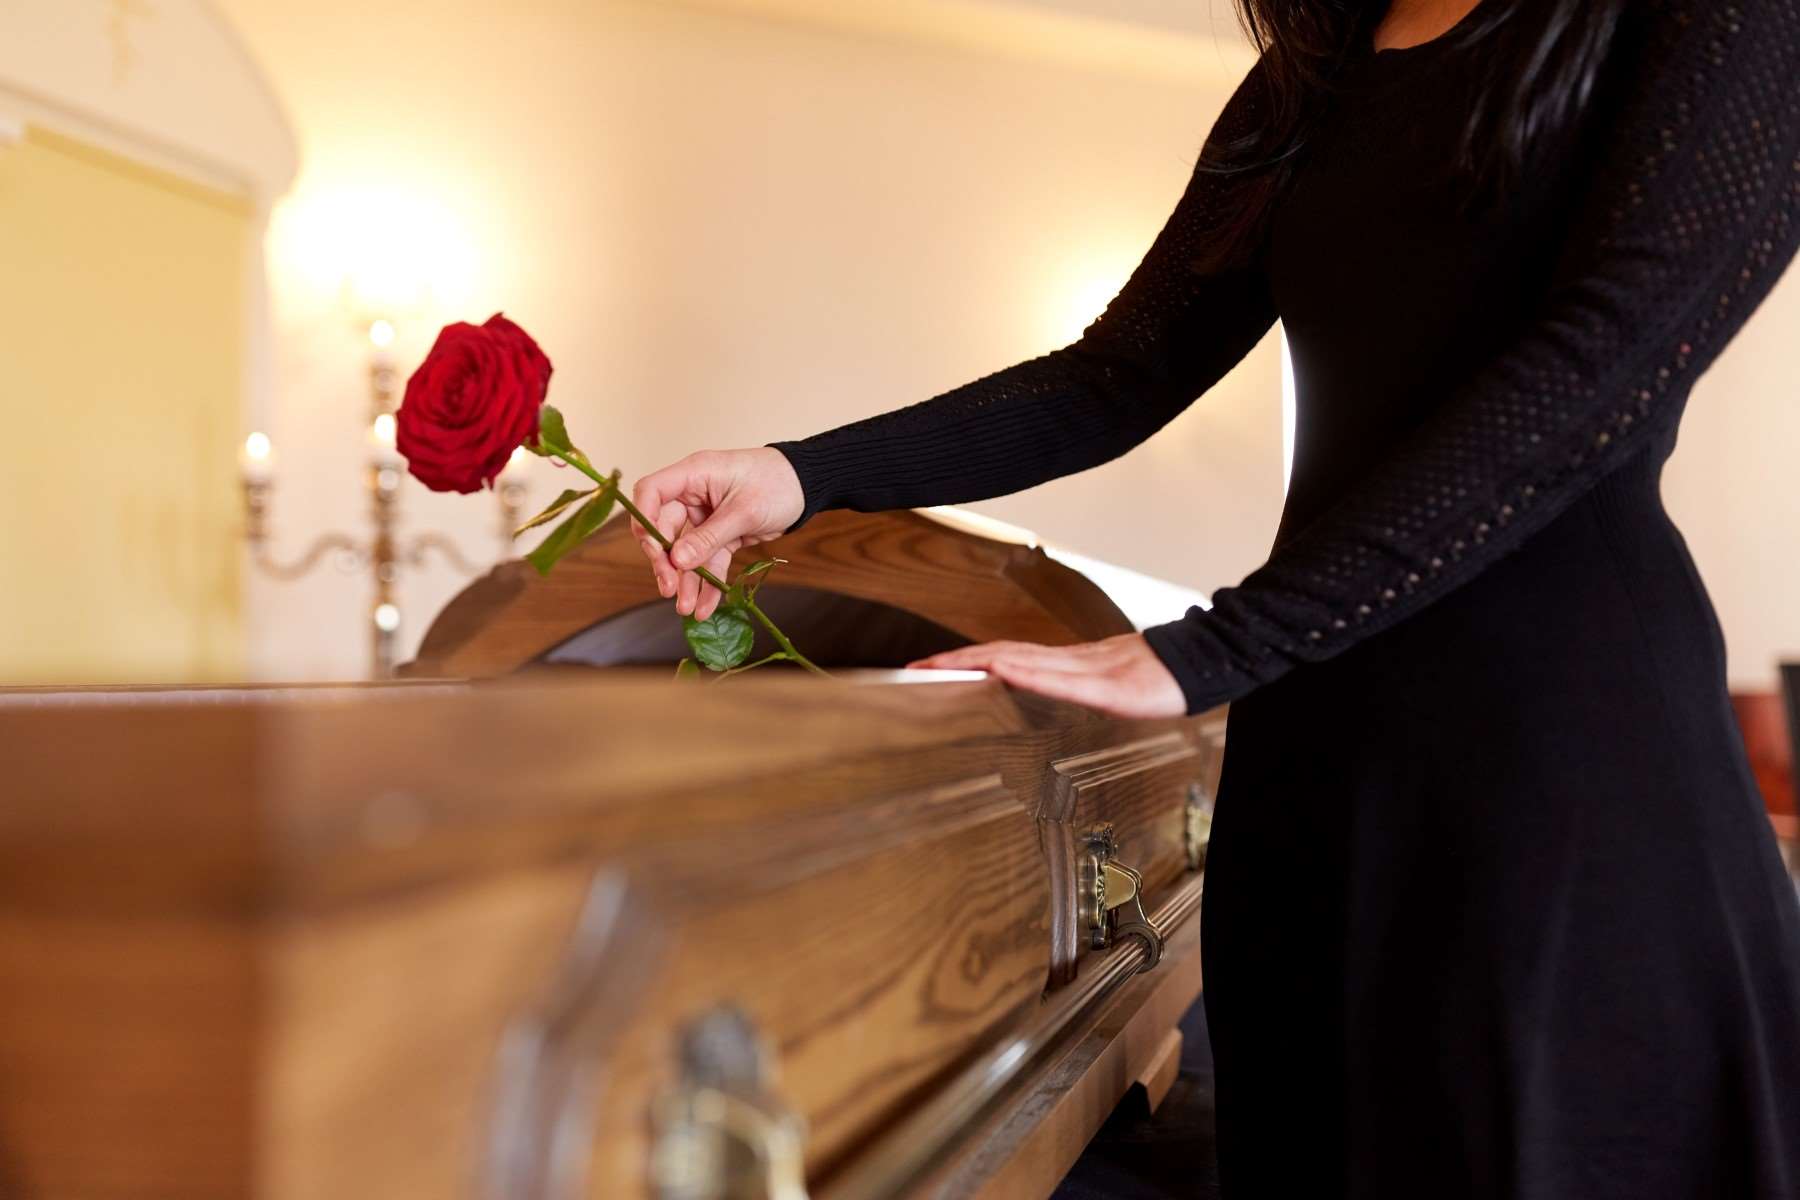 Zasiłek pogrzebowy – co to za rodzaj świadczenia i komu się należy?